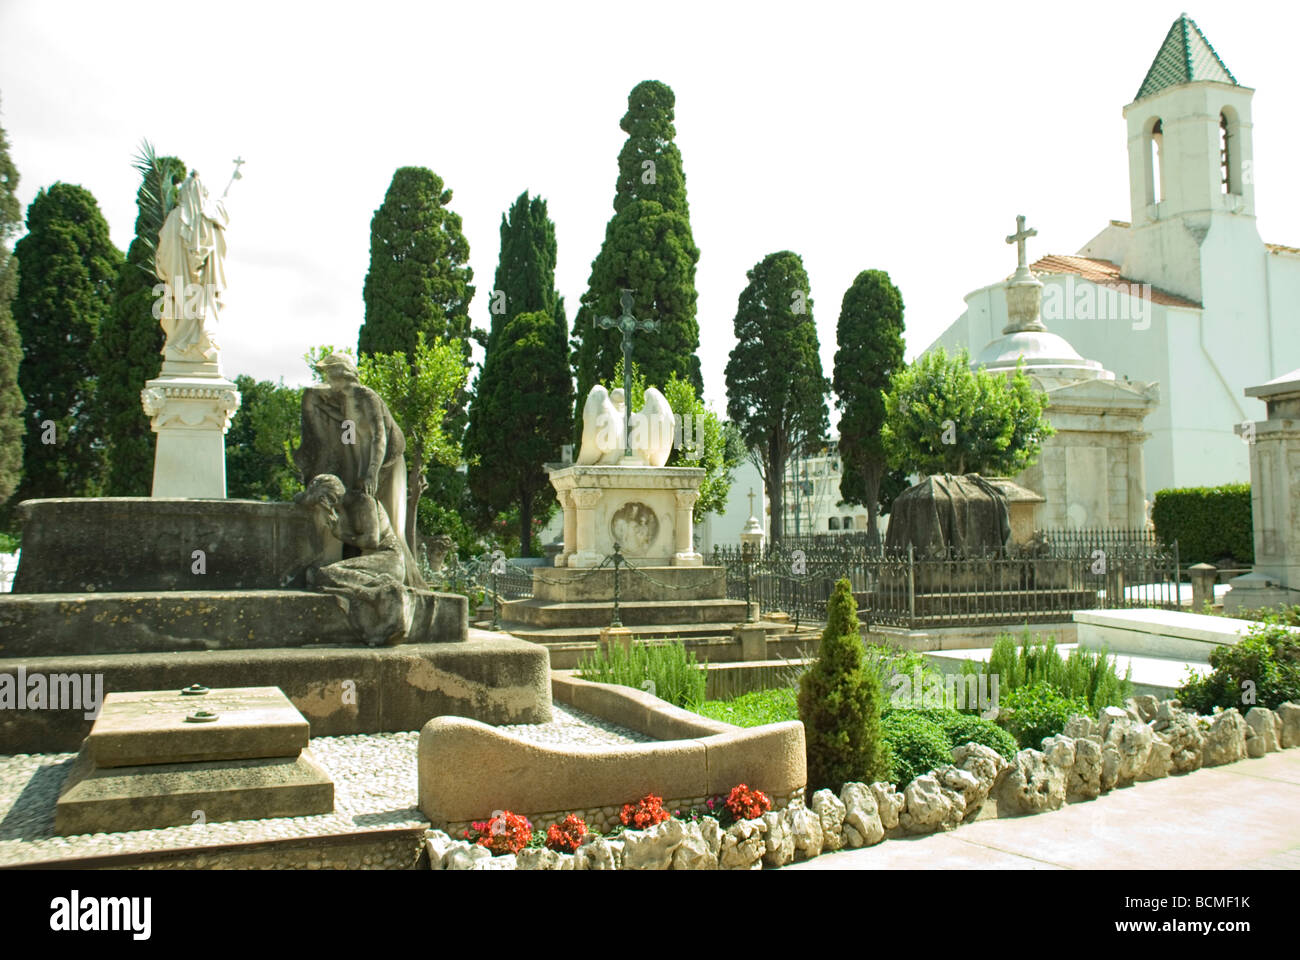 Grabdenkmäler und Zypressen auf dem Friedhof von Sitges, Barcelona - Spanien Stockfoto